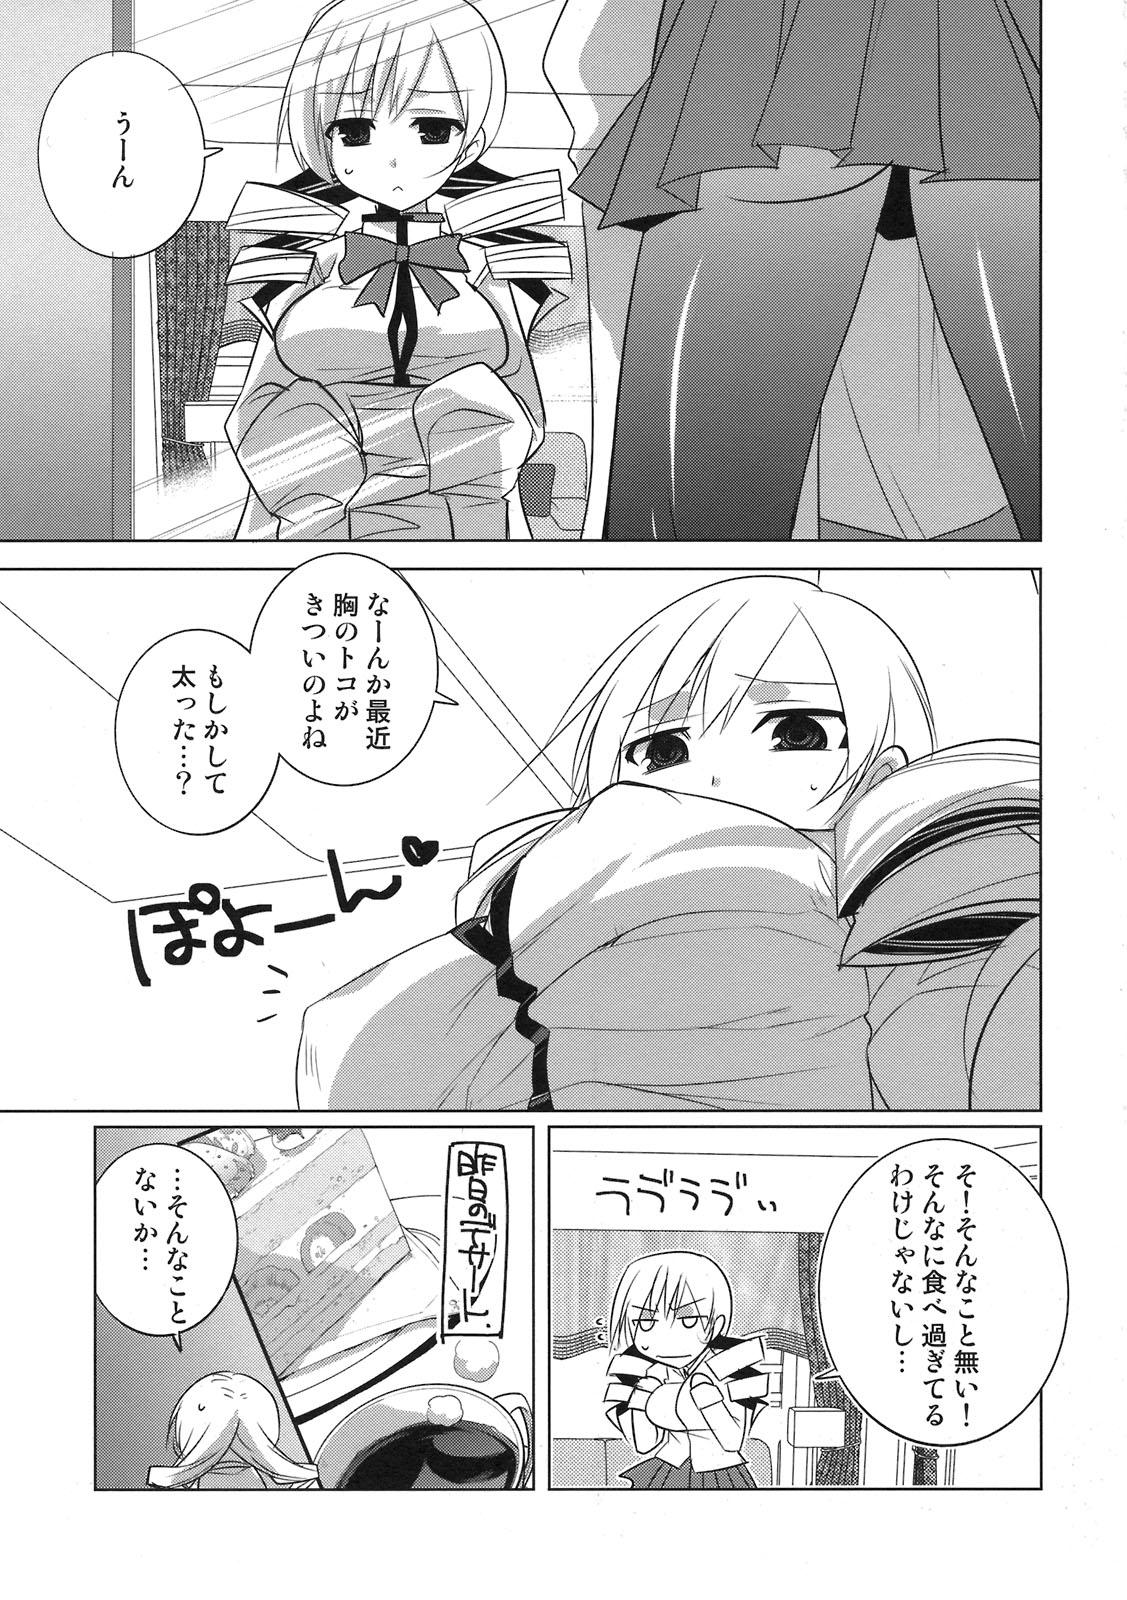 Double Penetration Saikin Seifuku no Mune ga Kitsuku nattekite Okomari no Yousu no Mami-san. - Puella magi madoka magica Gay Military - Page 3